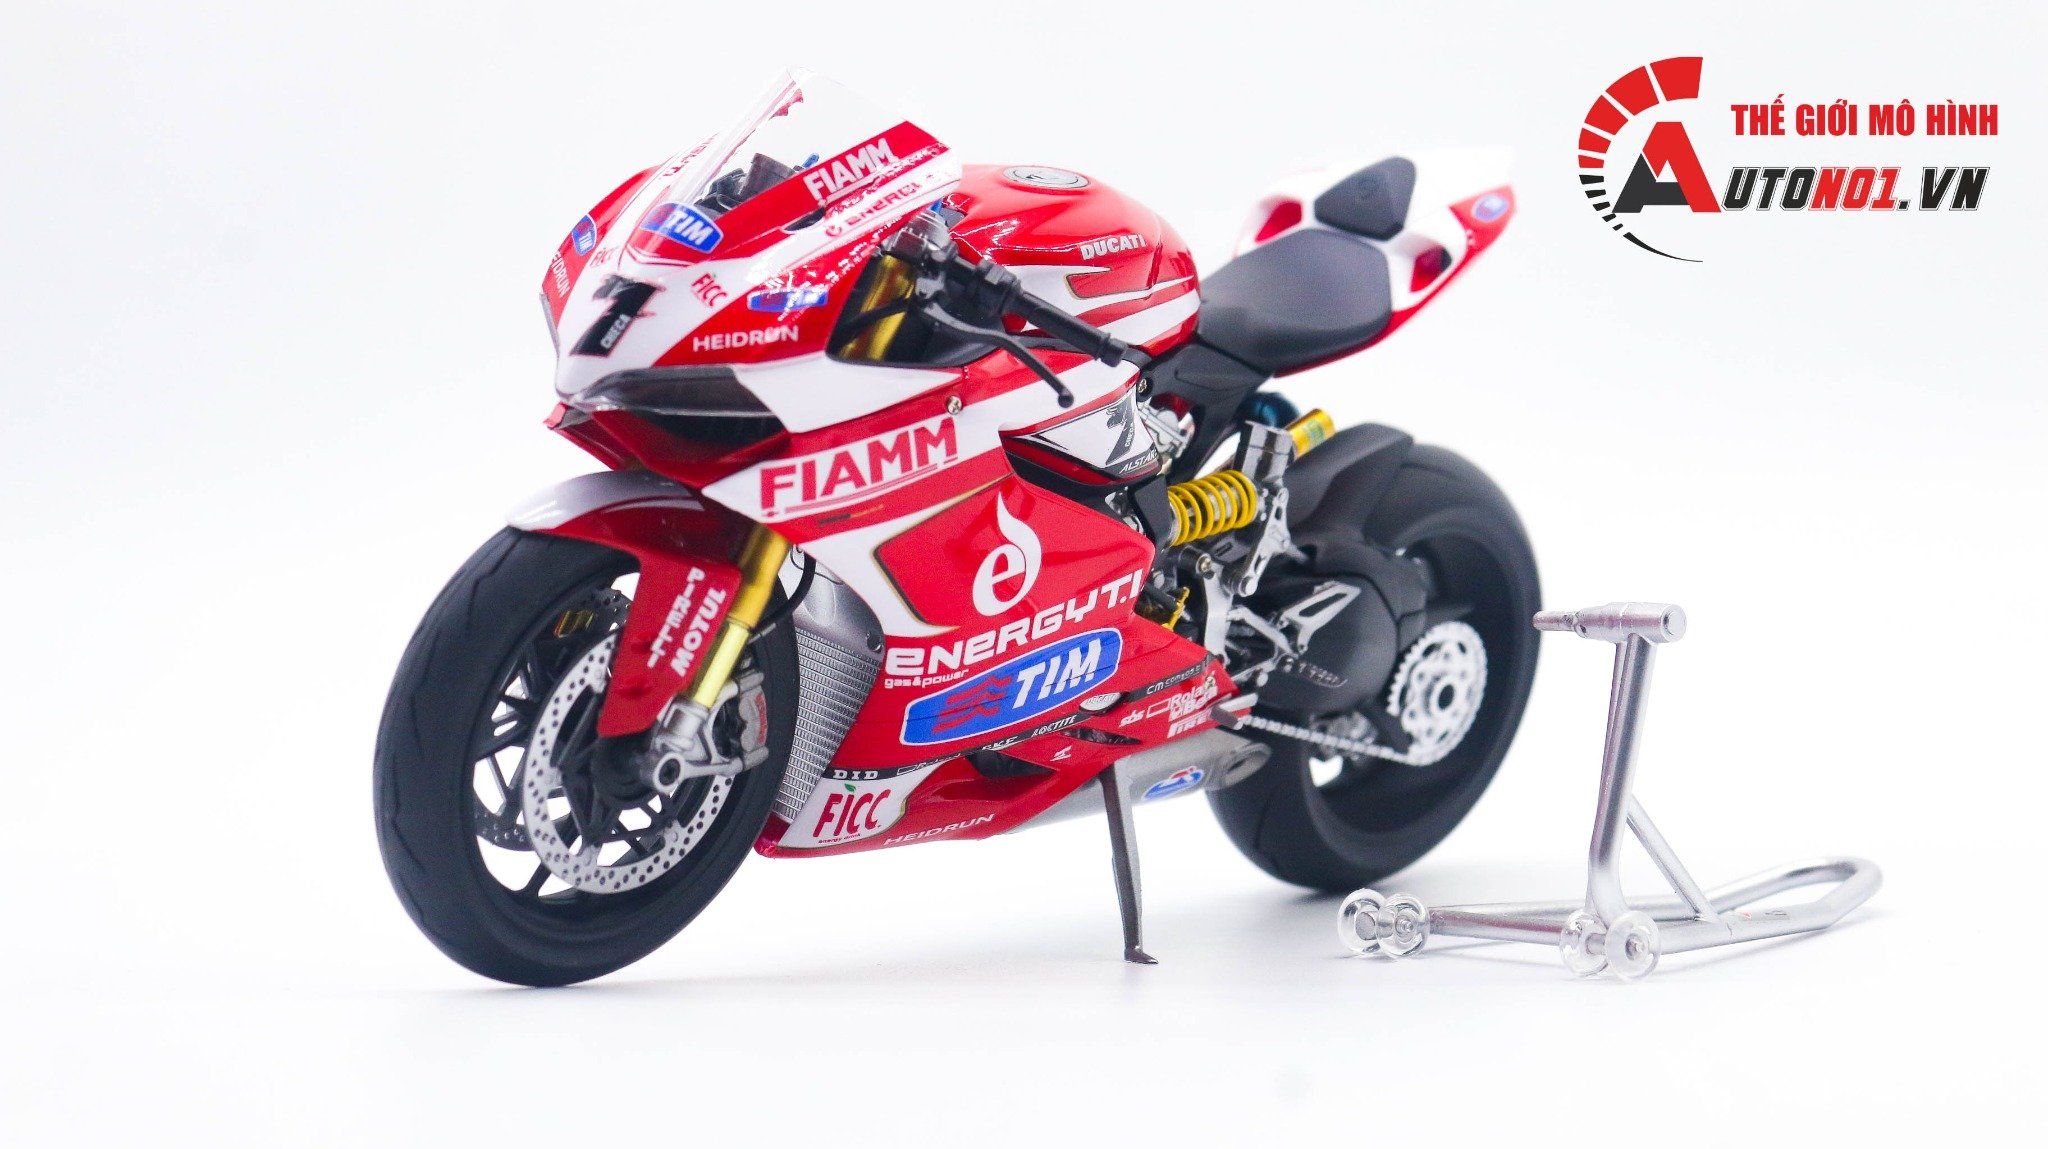  Mô hình xe Ducati Panigale 1199 Fiamm Tim Sbk 2013 #7 1:12 Tamiya D227d 